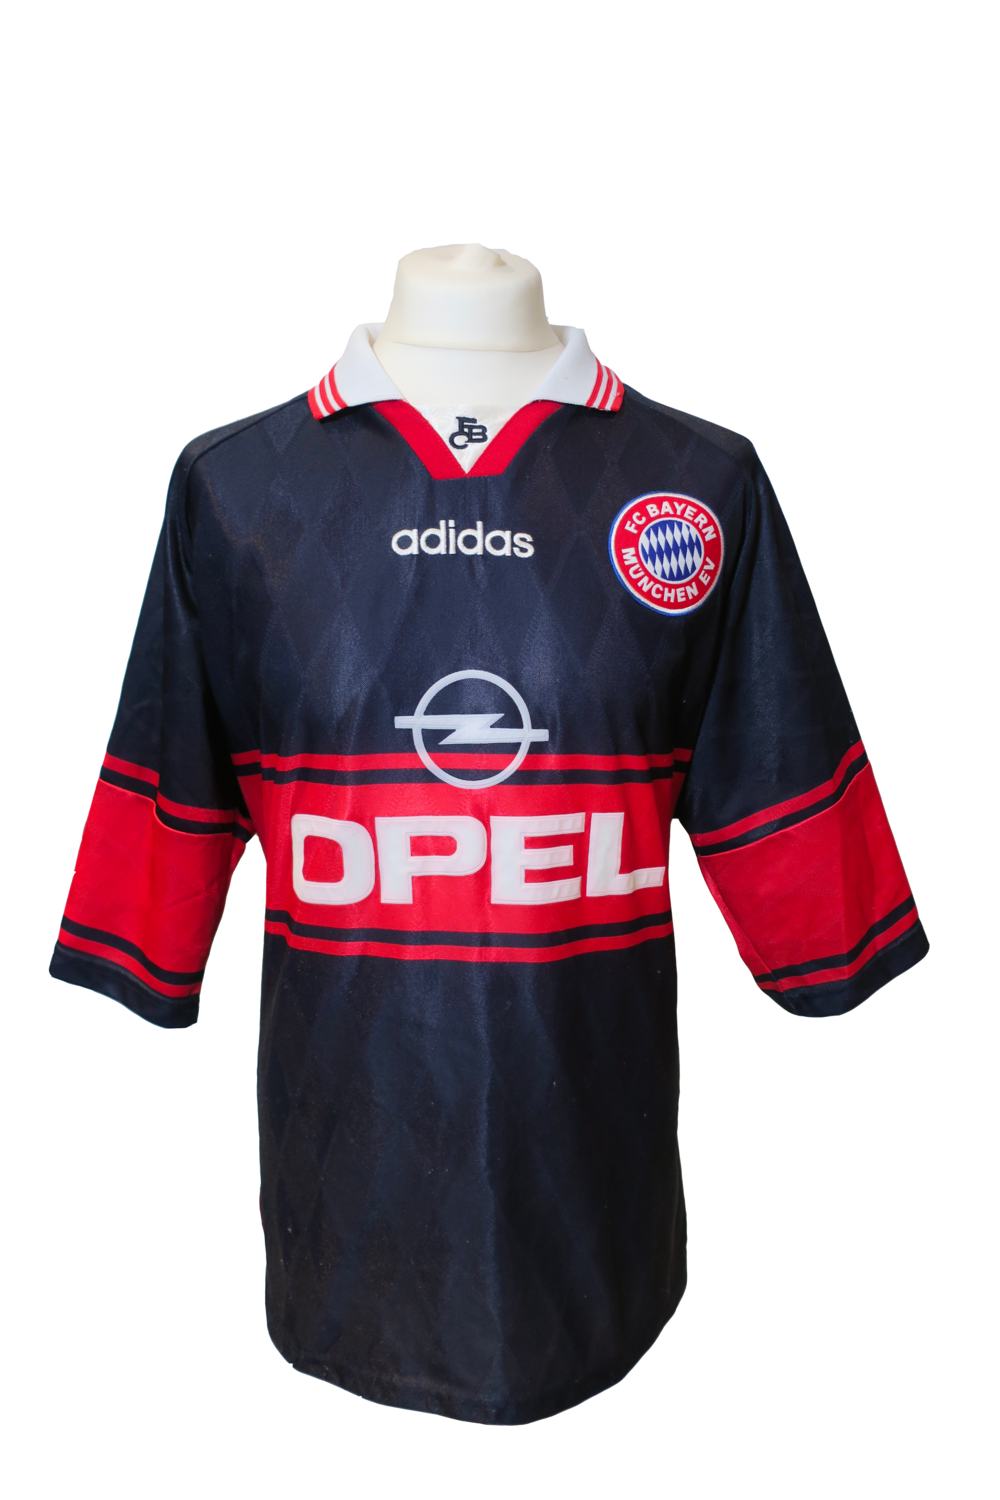 bayern munich jersey 1998